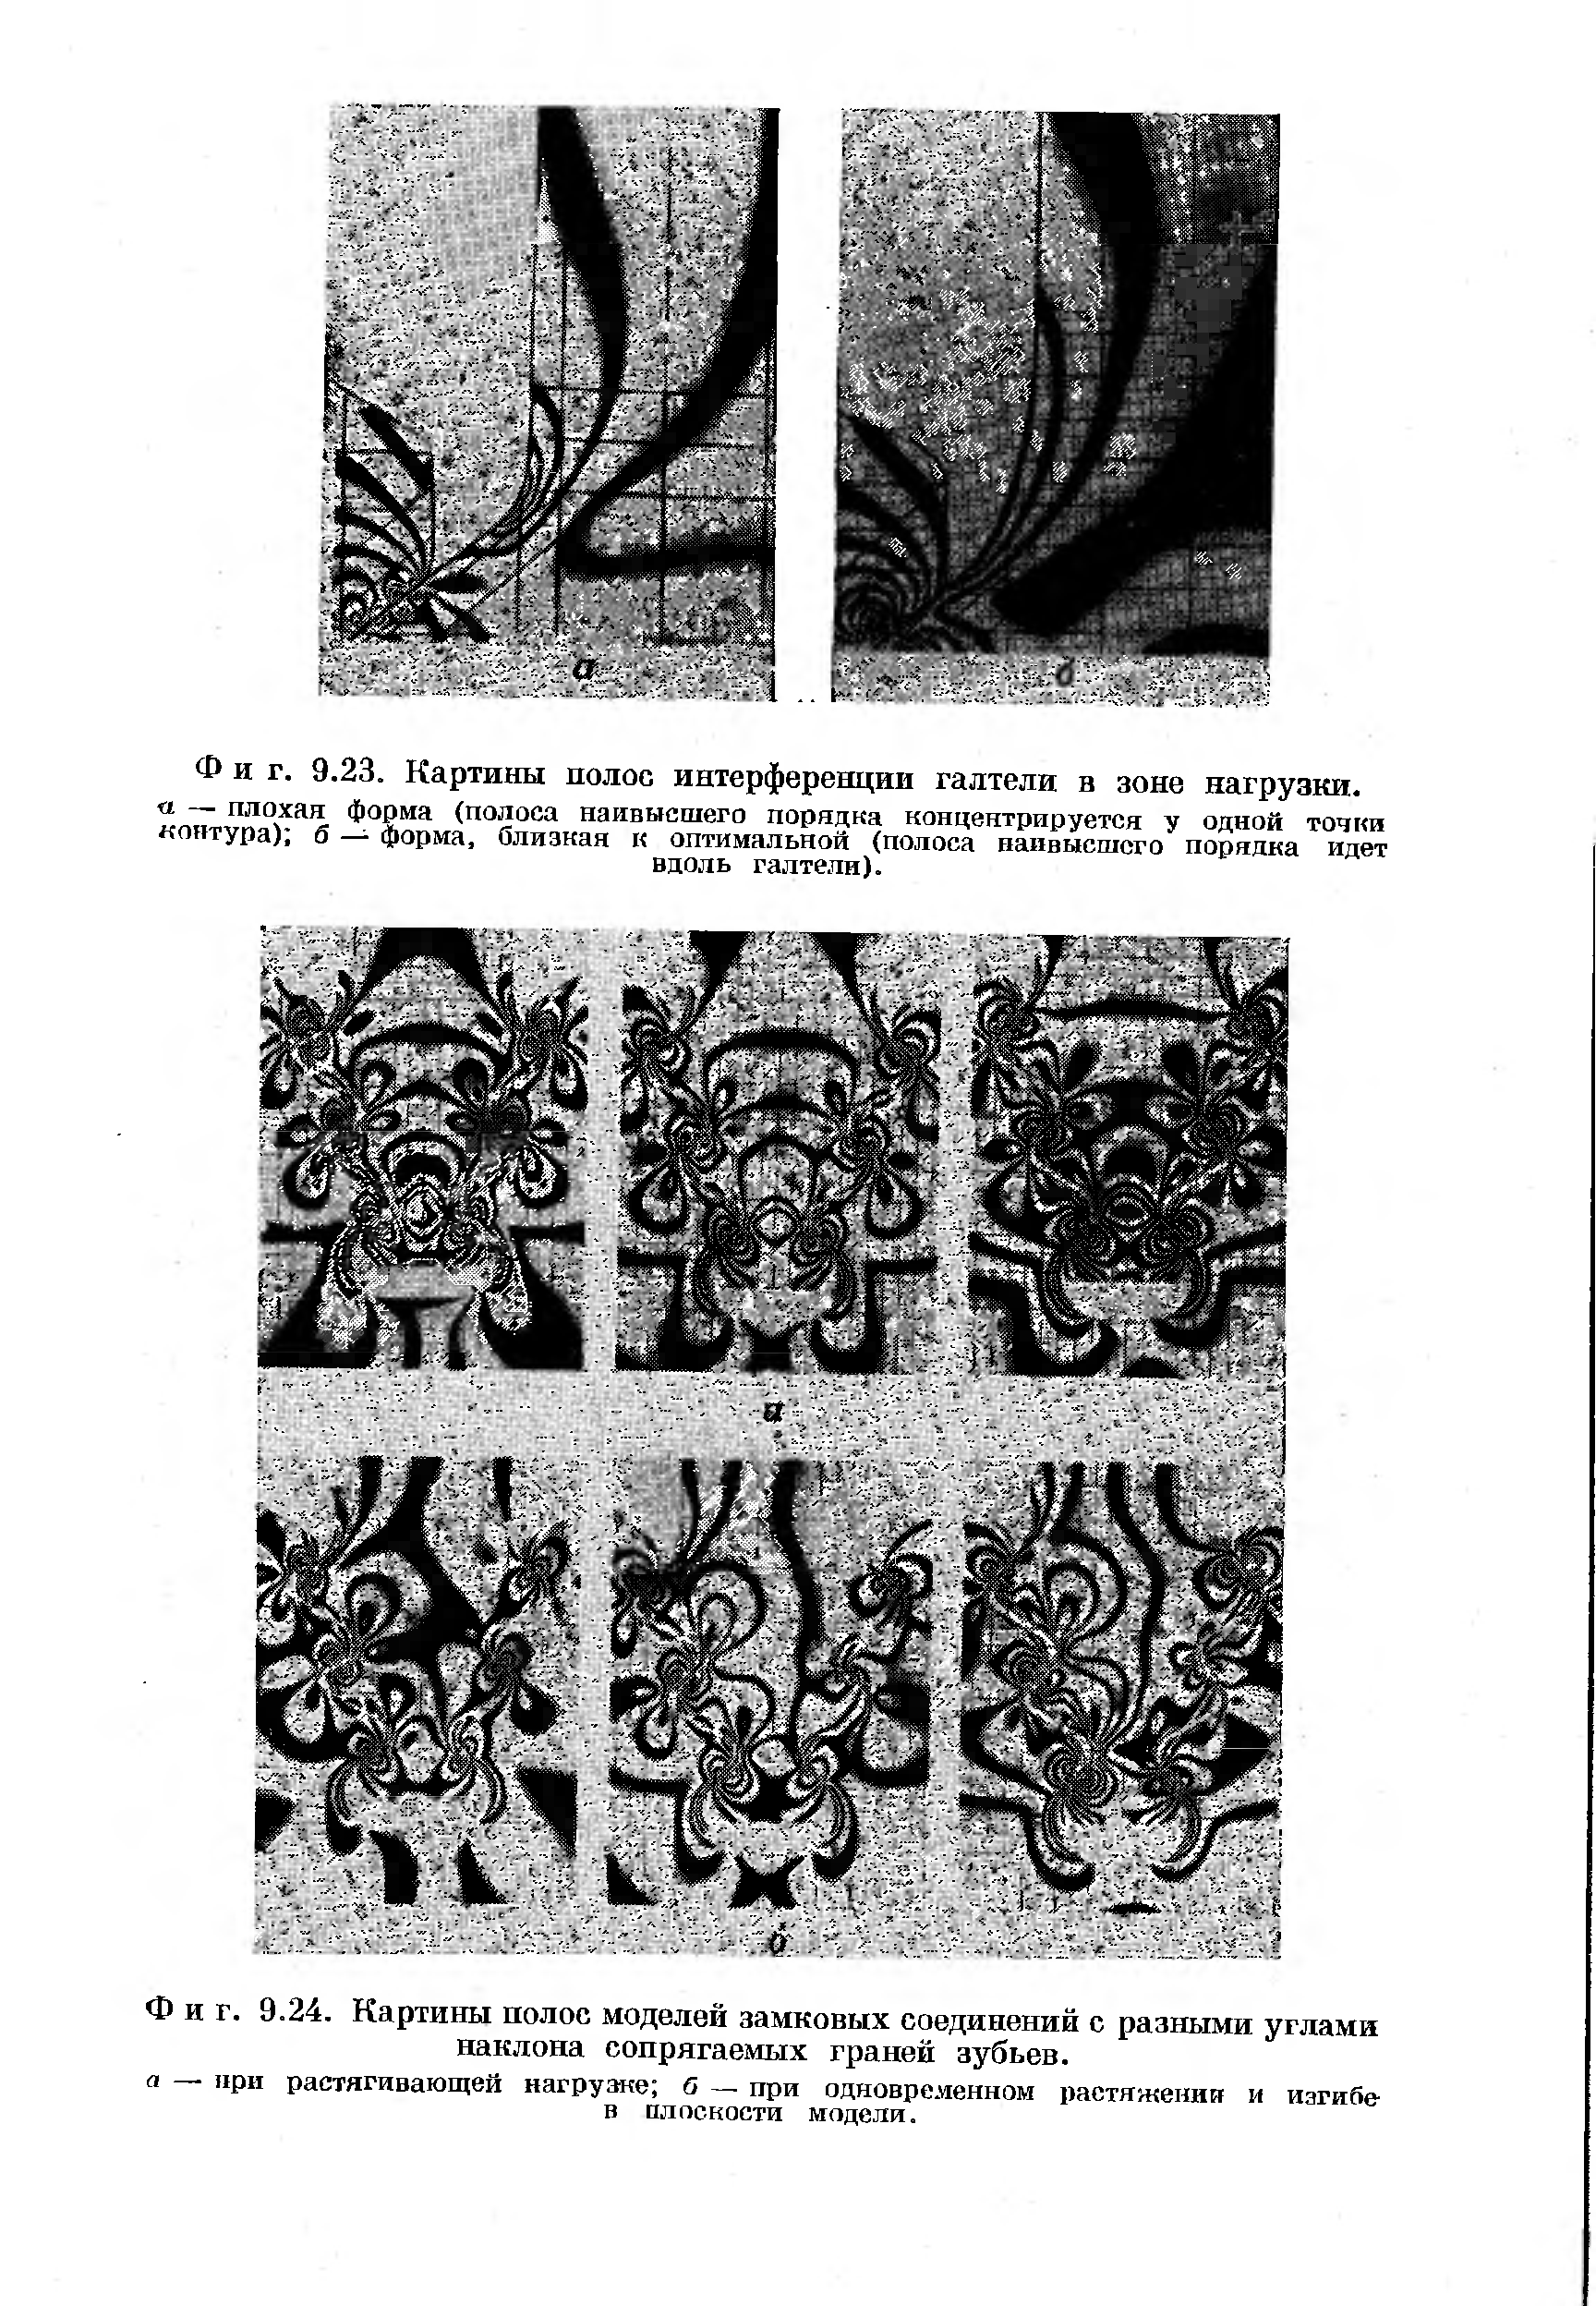 Фиг. 9.24. Картины полос моделей замковых соединений с разными углами наклона сопрягаемых граней зубьев.
